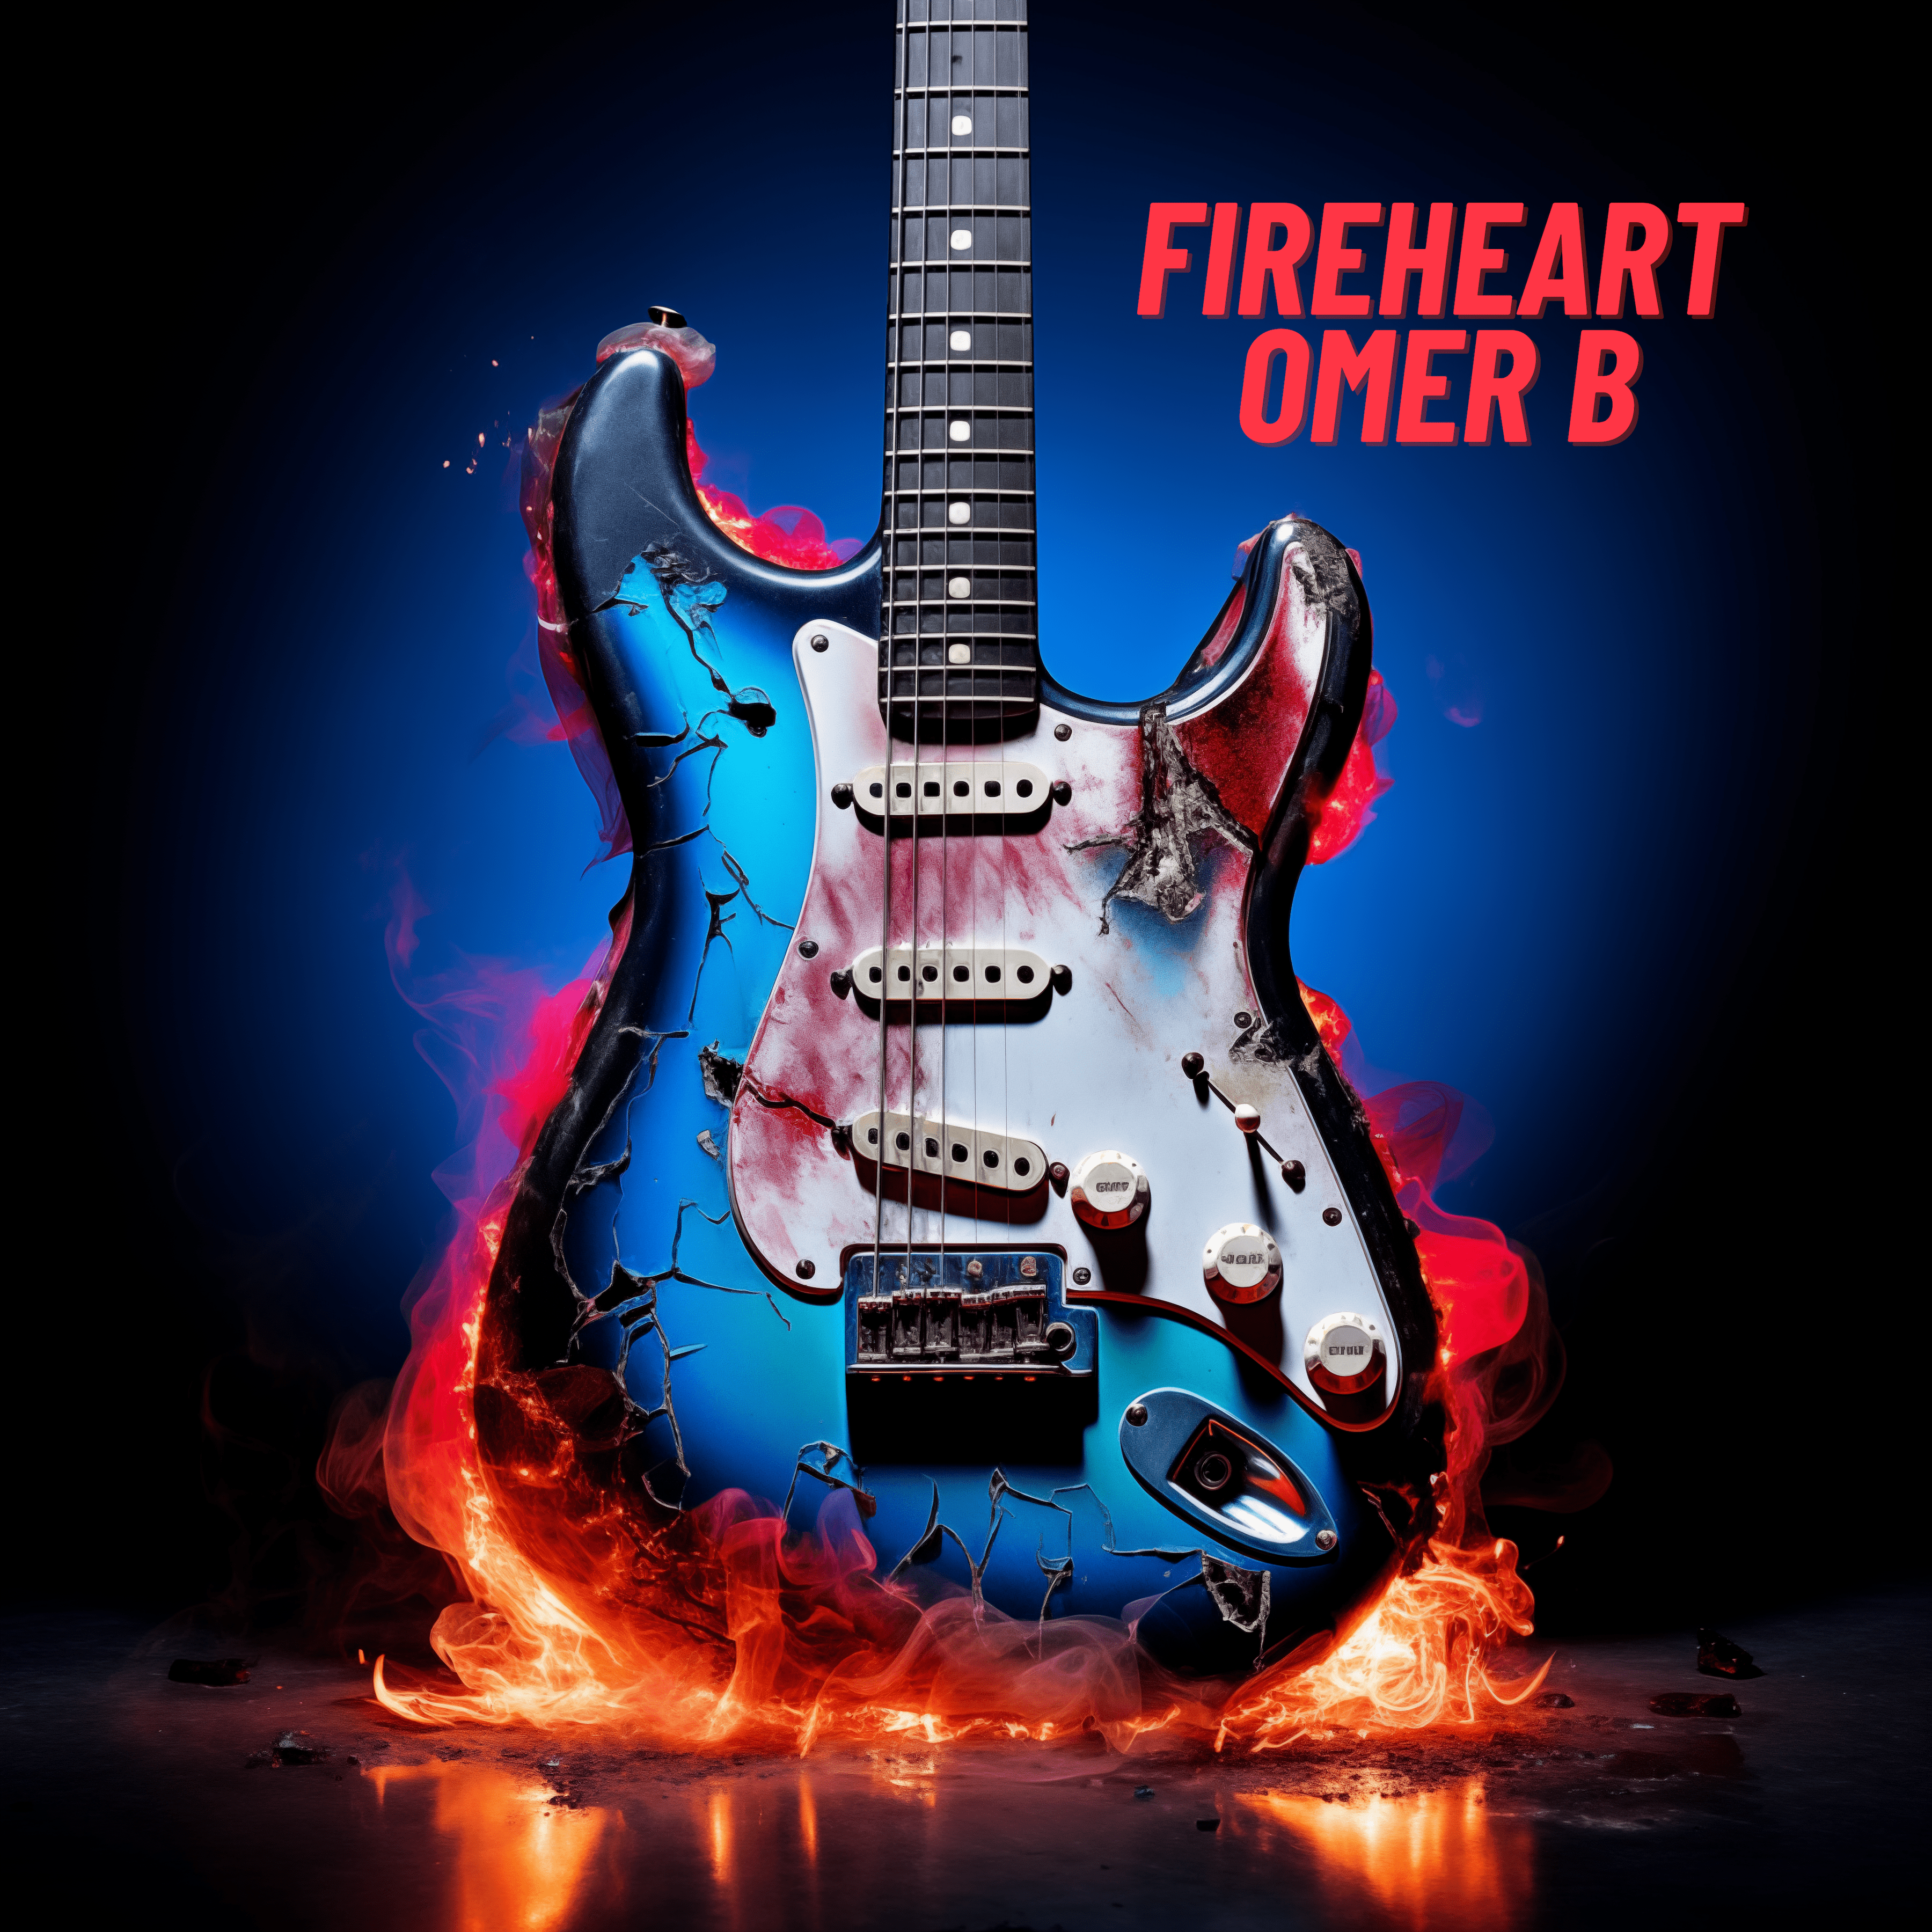 'FireHeart' by Omer B